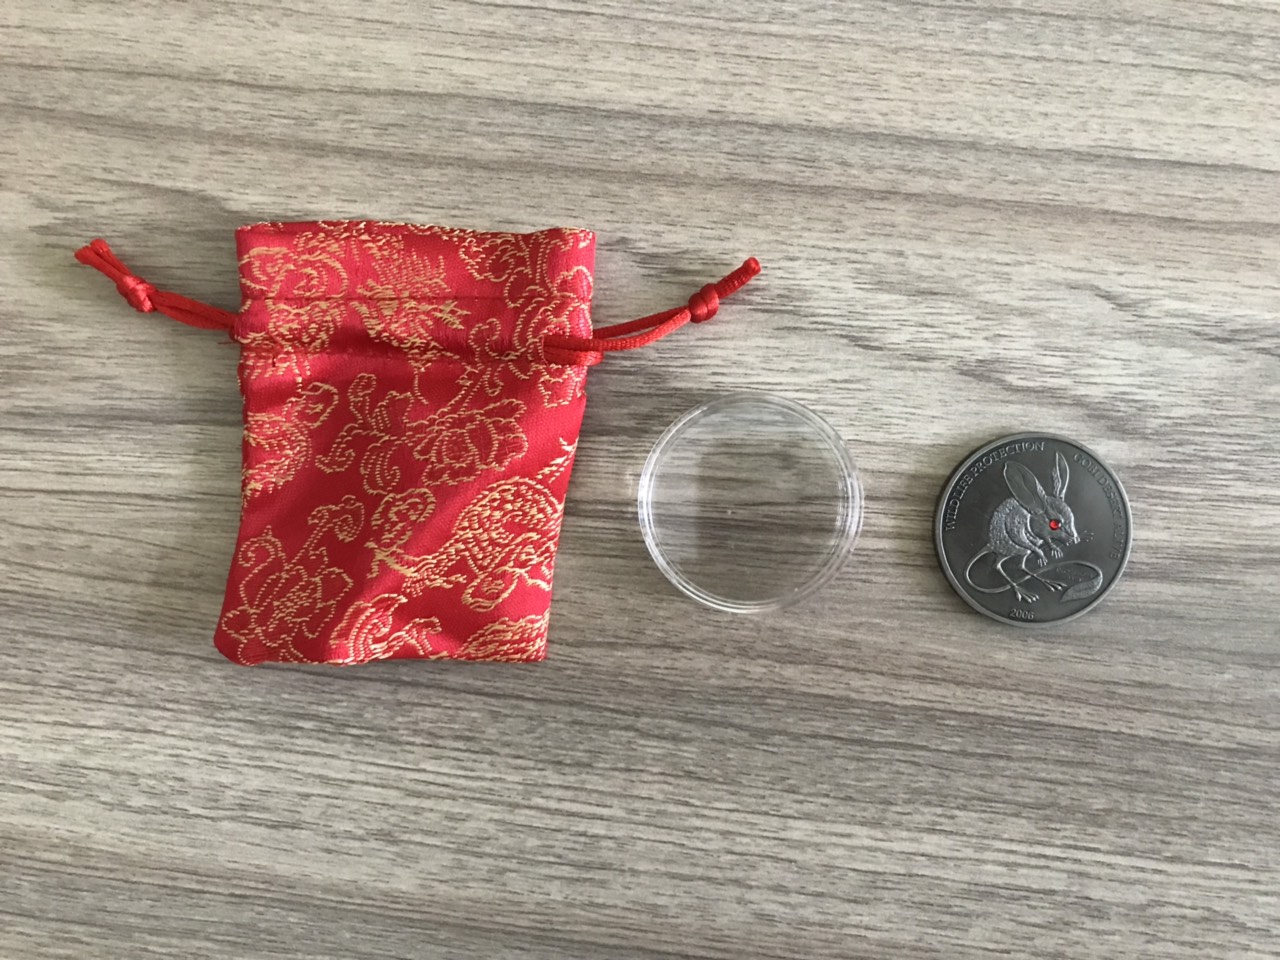 Đồng xu con chuột của Mông Cổ giả cổ bạc, đường kính 40mm, nặng 28gr  độc đáo mới lạ thích hợp trưng bày trong nhà hoặc biếu tặng trong dịp tết Canh tý 2020 - TMT Collection - MS 249